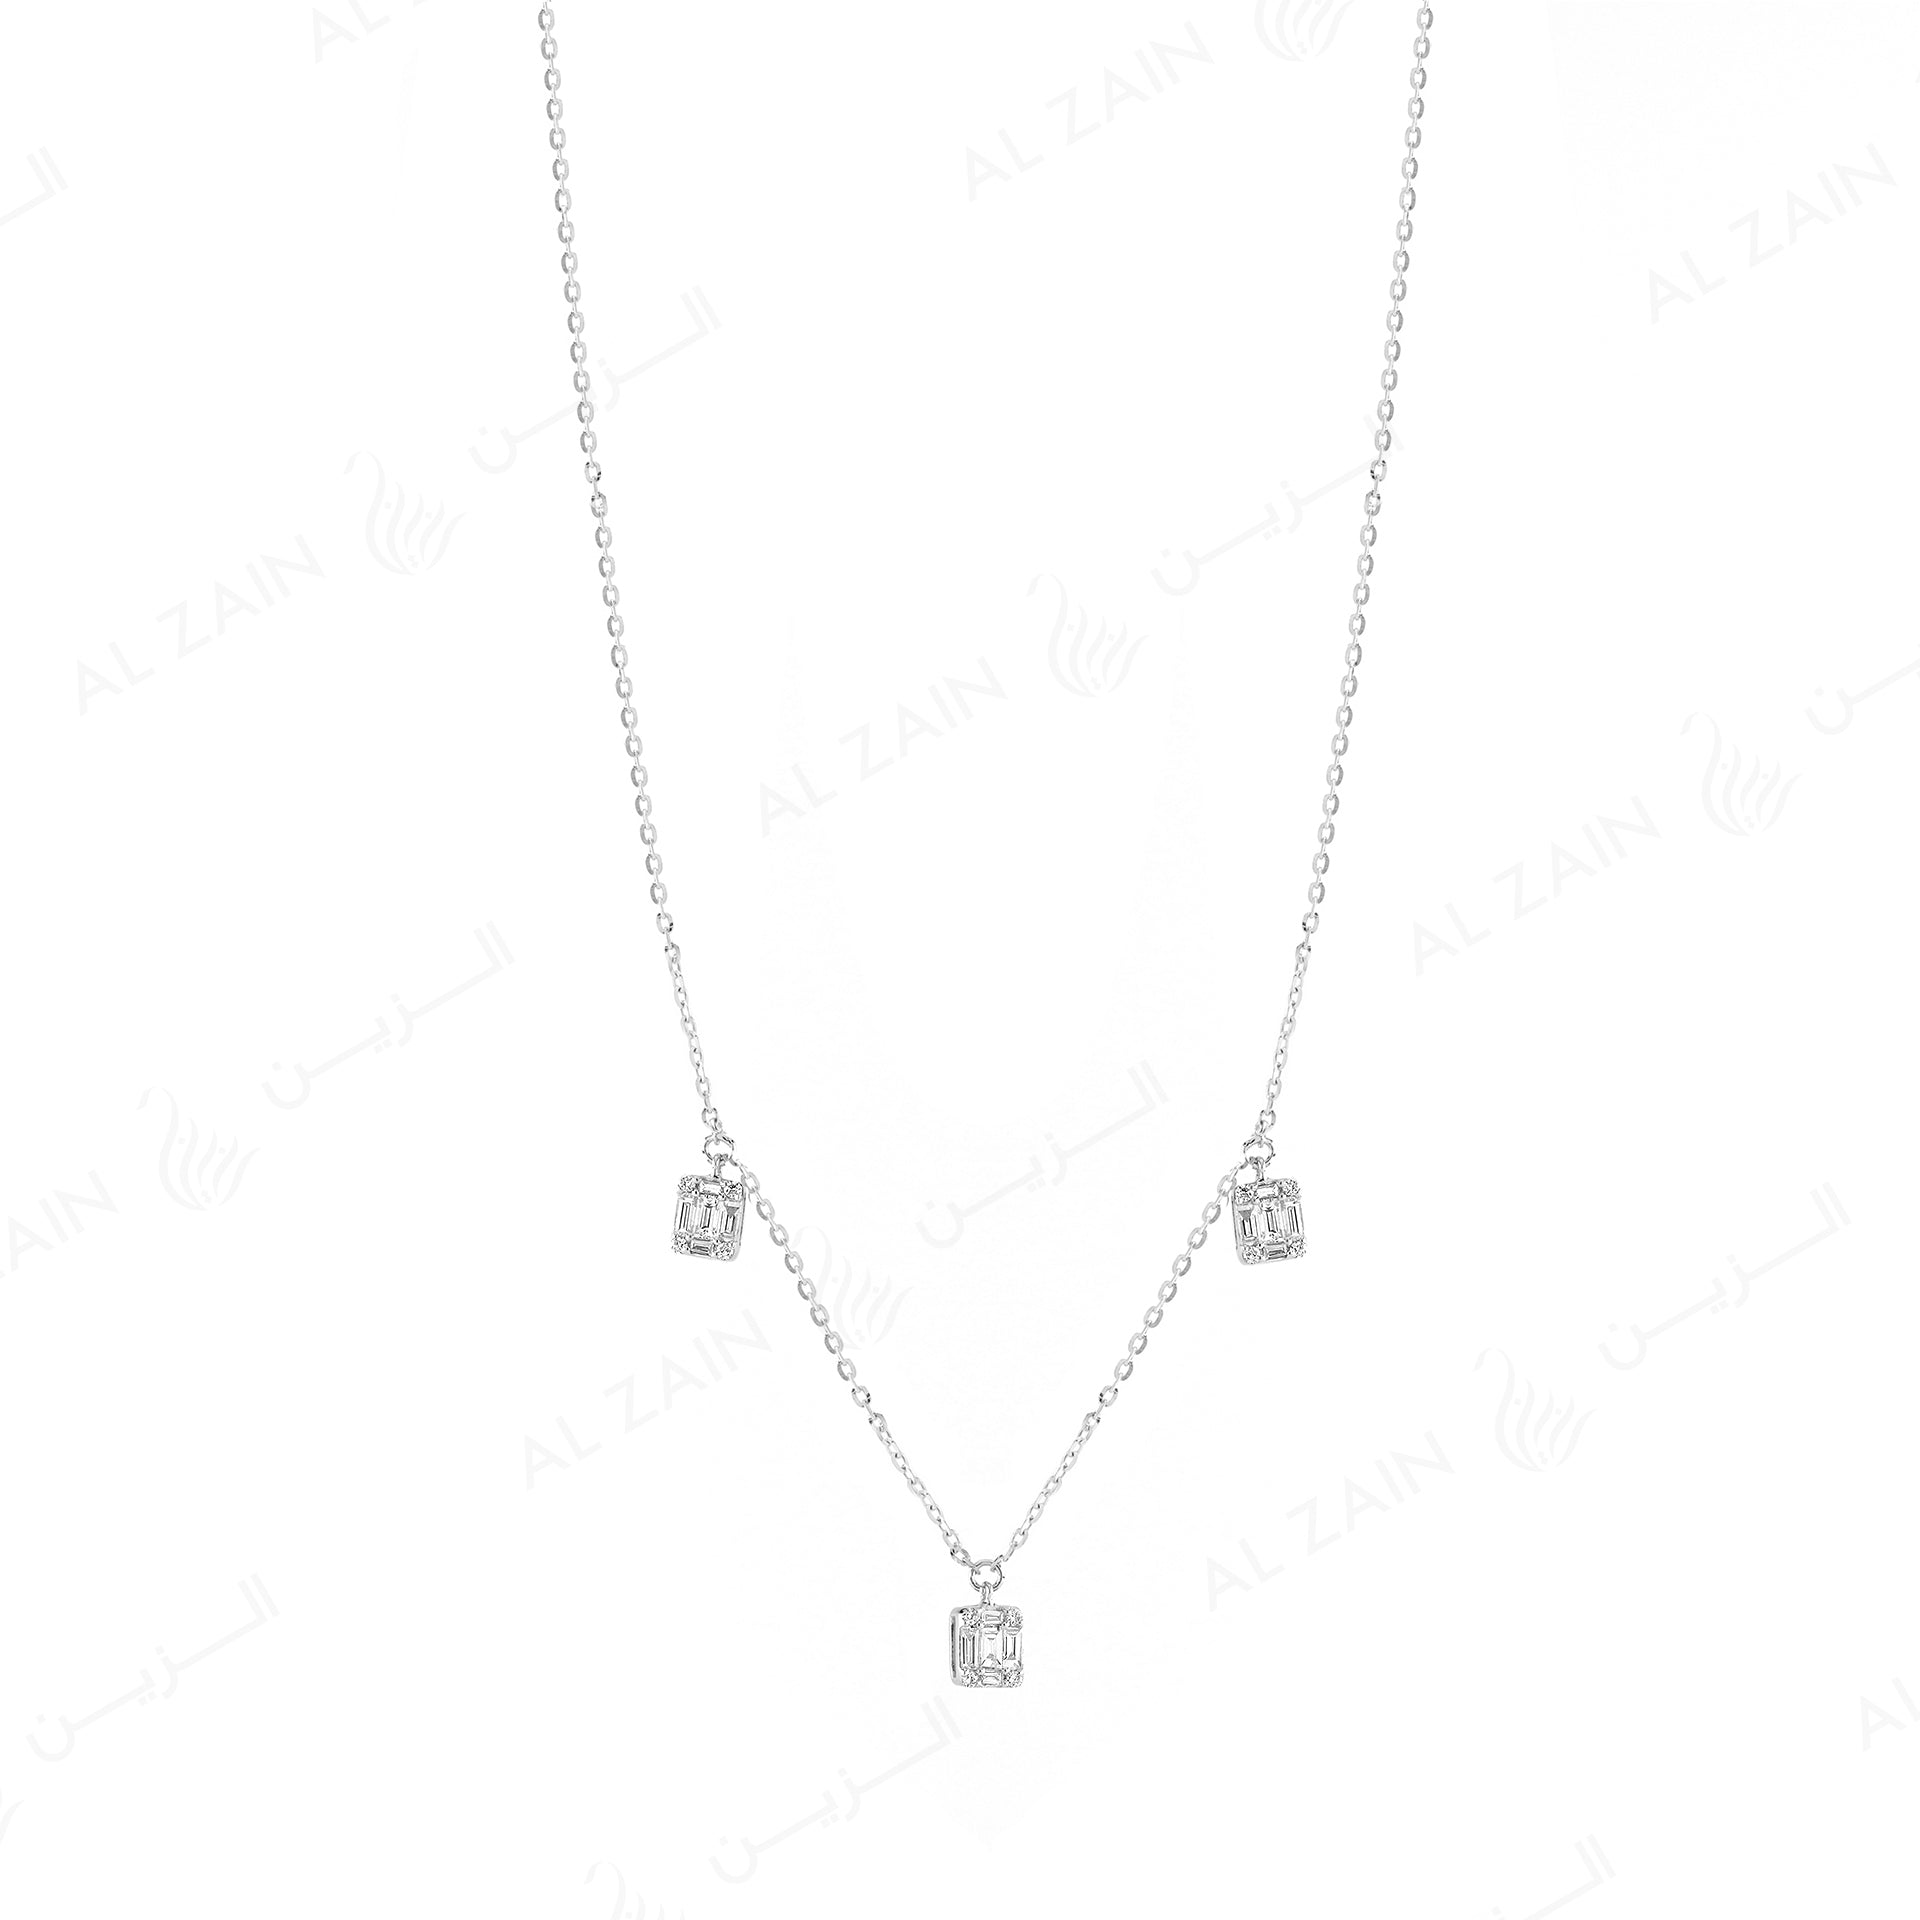 18k White gold pendant in emerald illusion cut set diamonds